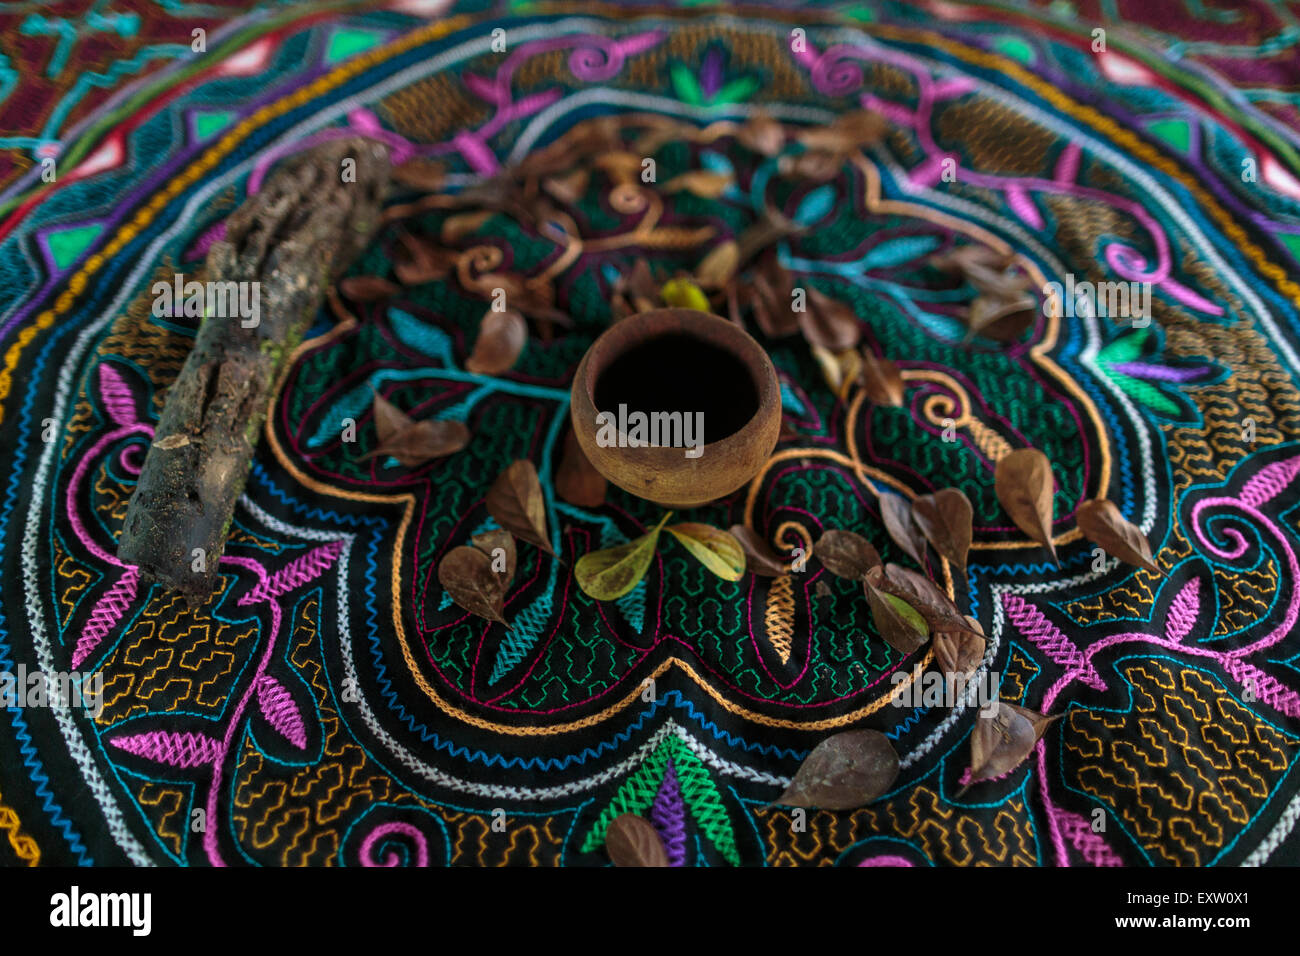 Una tazza utilizzata per servire ayahuasca siede su un tella ricamato in locali tradizionali disegni shipibo all'interno di un cerimoniale di maloca. Foto Stock